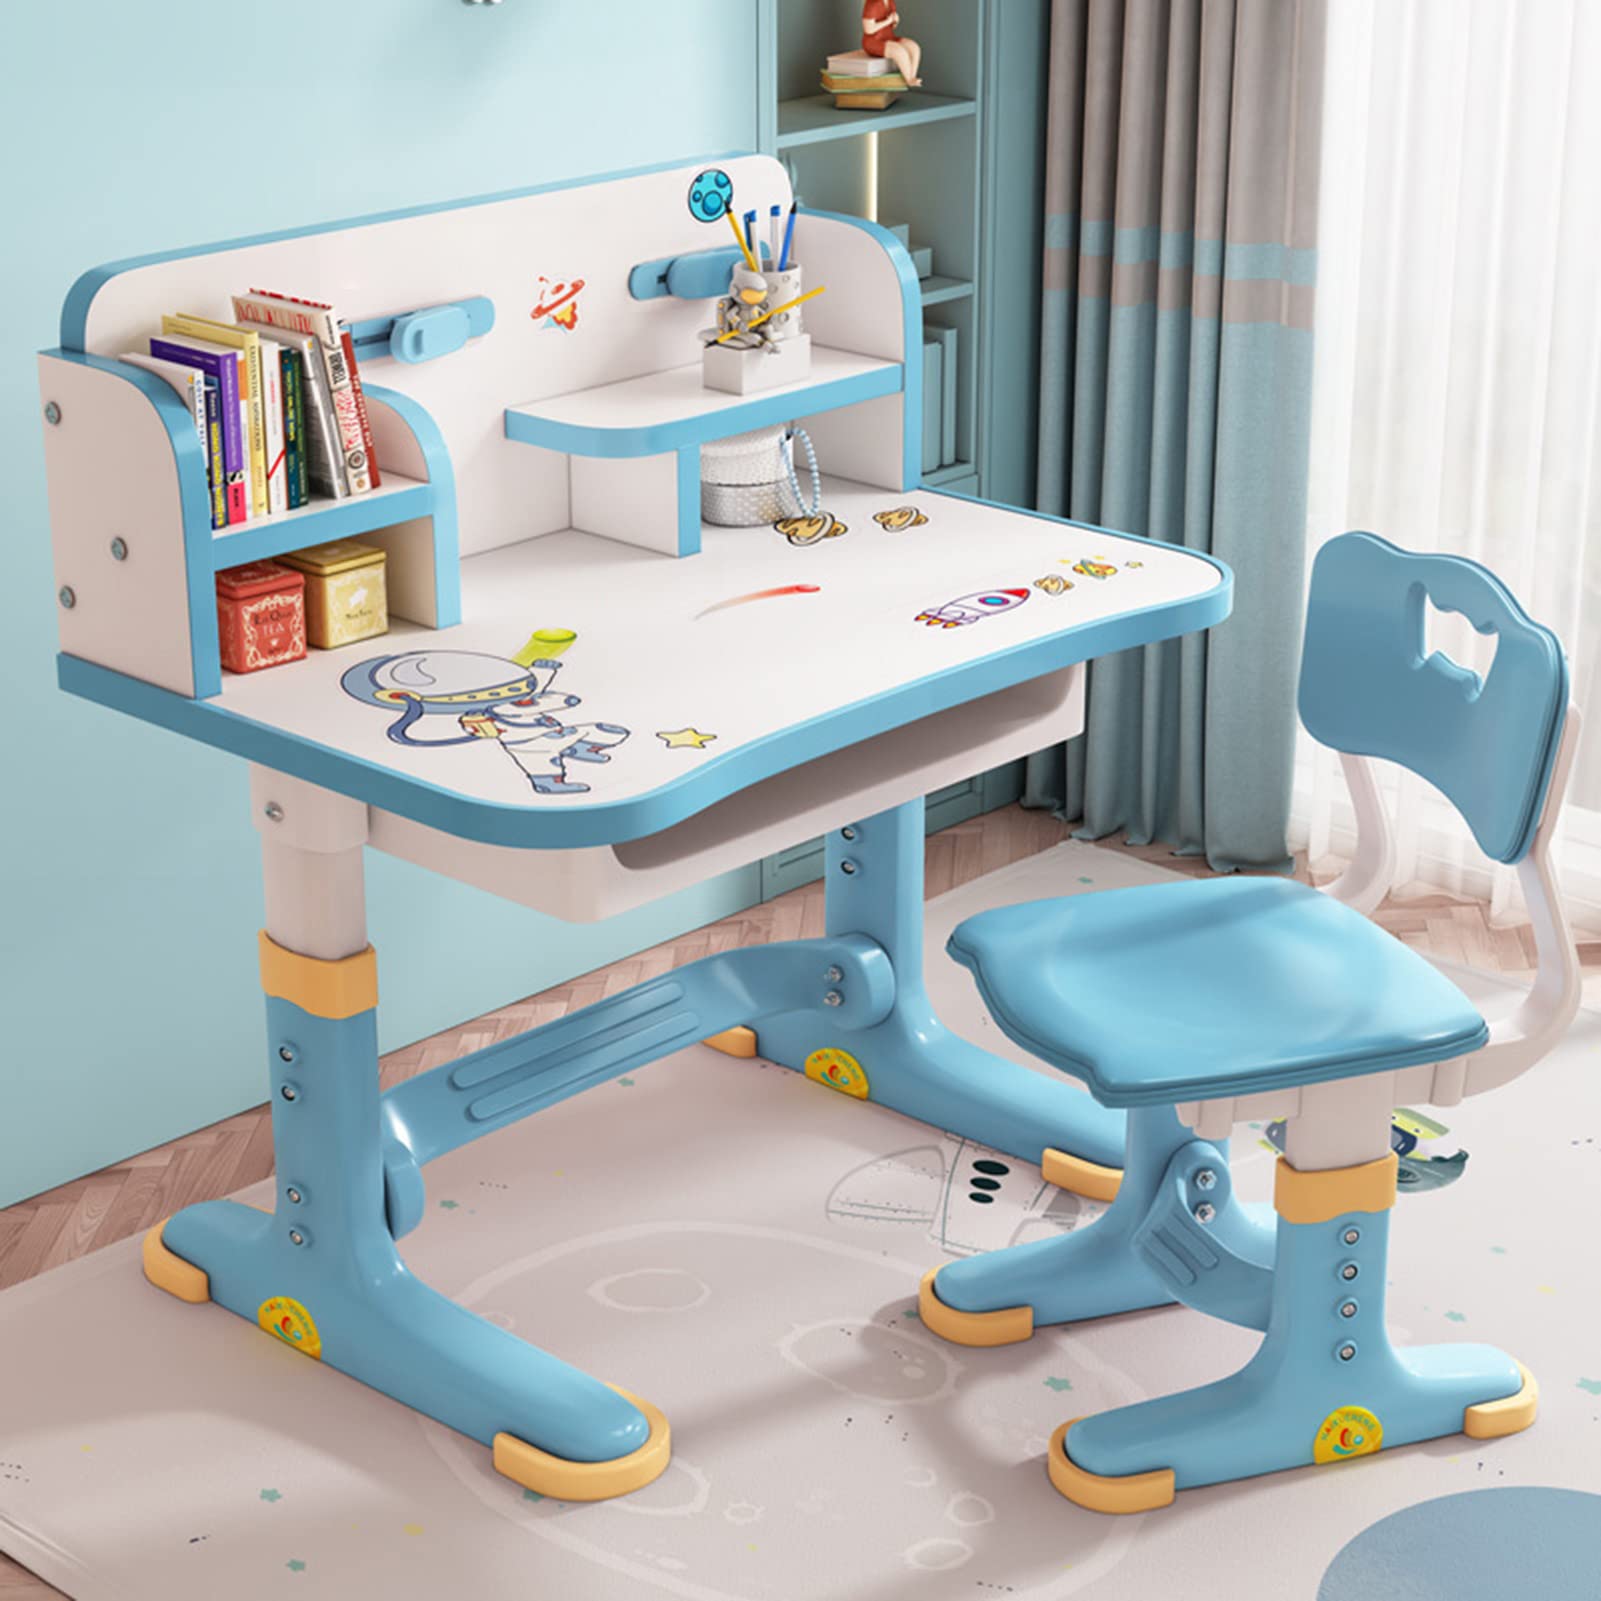 Cdar Kids Desk and Chair